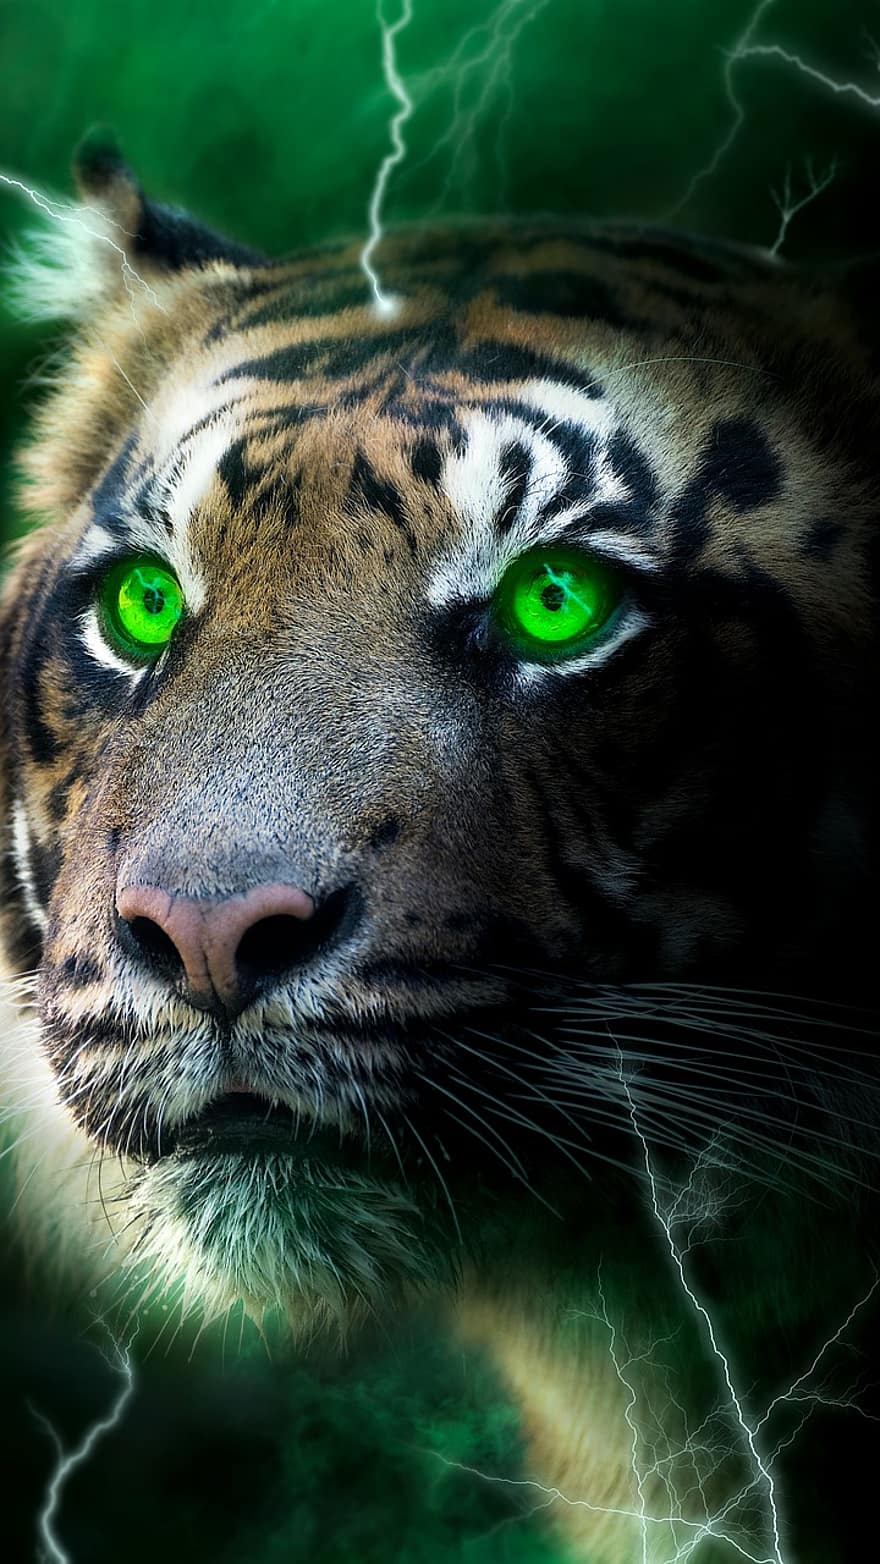 tygr, Blesk, temný, záře, zelená, mlha, tapeta na zeď, Kočkovitý, zvířata ve volné přírodě, zvířecí hlavy, undomesticated kočka